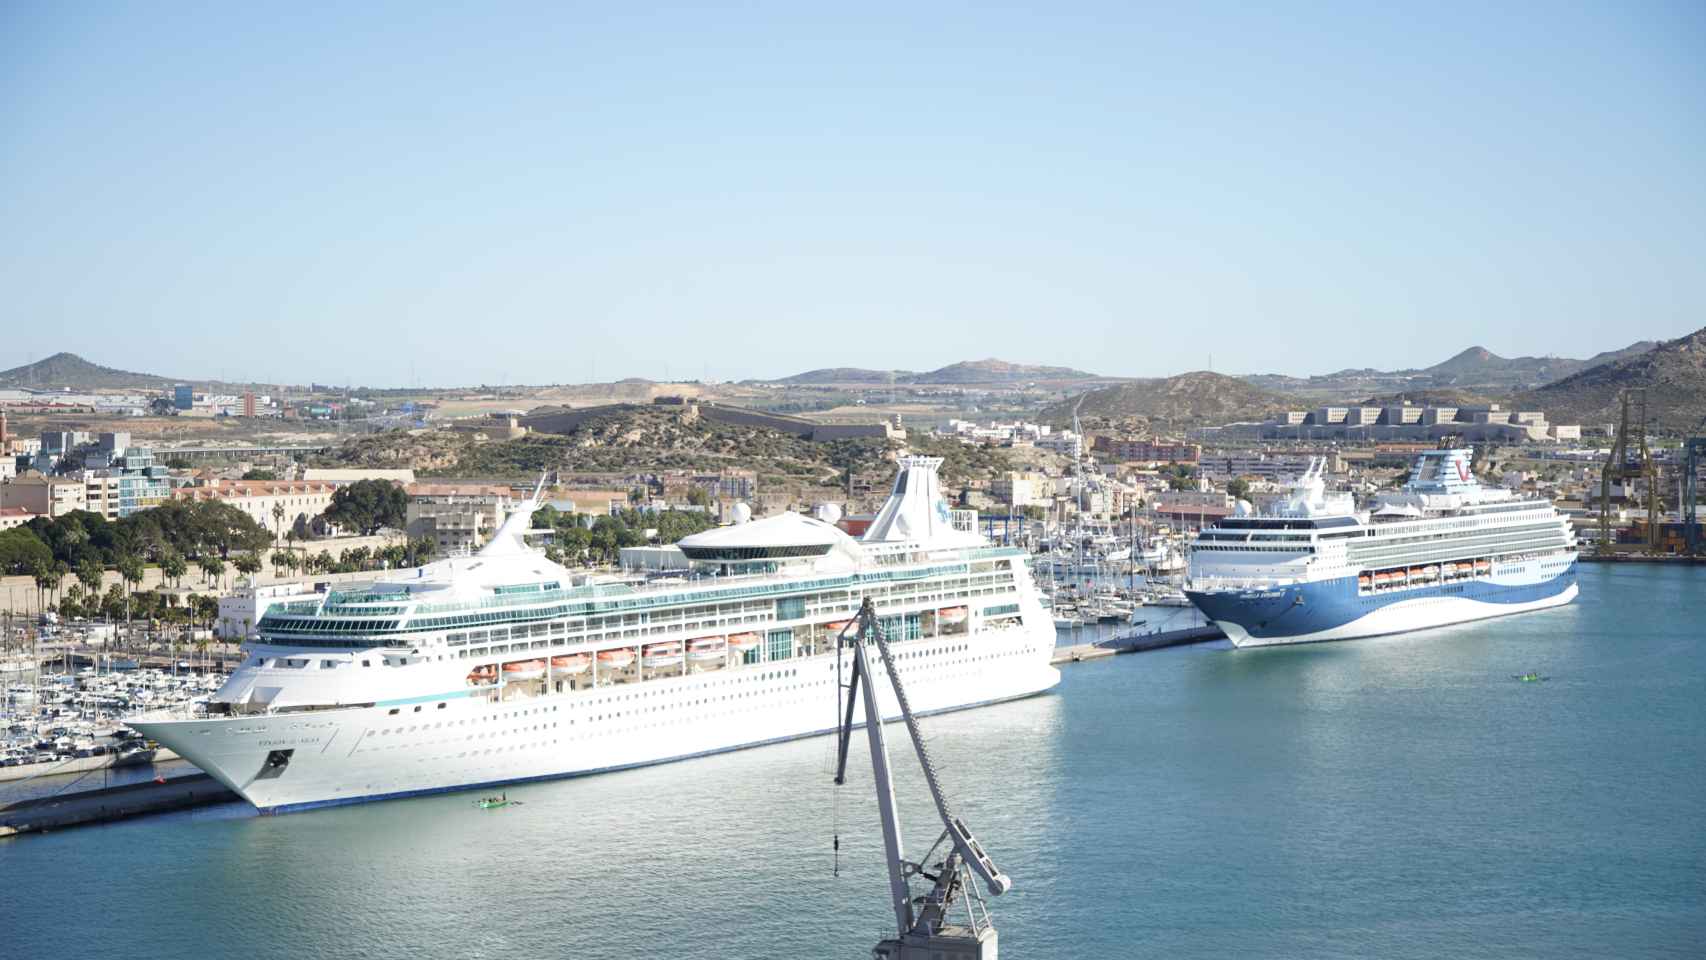 Dos impresionantes cruceros atracados en el Puerto de Cartagena.